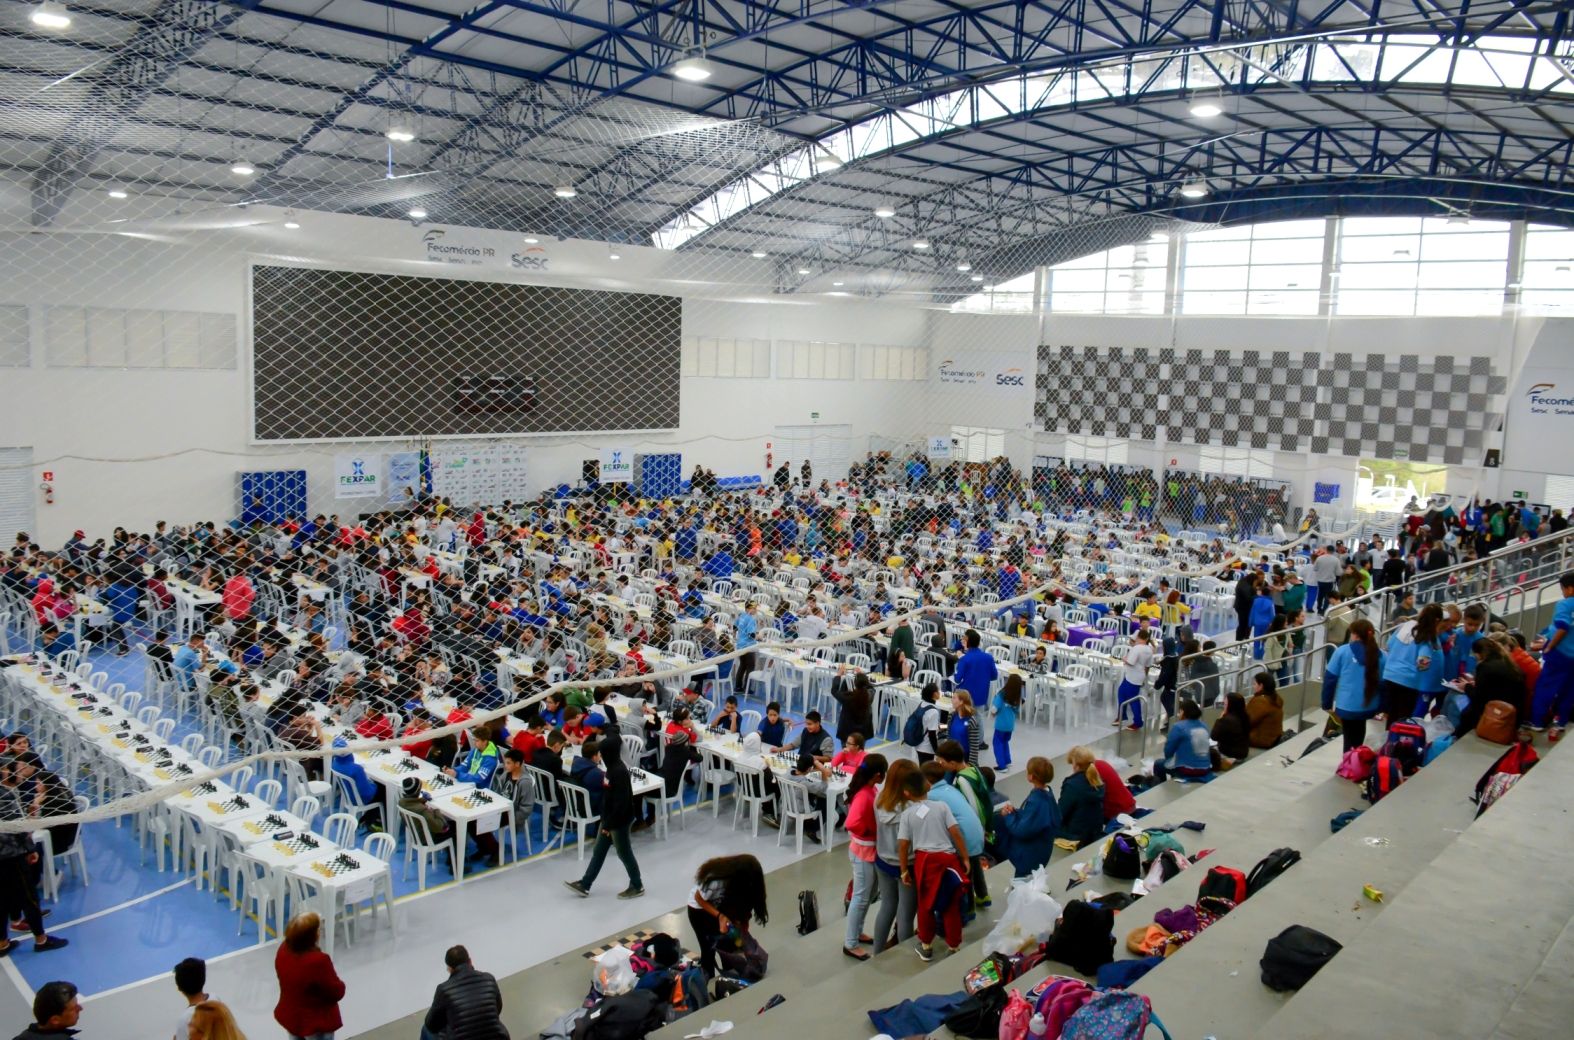 Lançamento do livro Xadrez para Todos: a ginástica da mente. - FEXPAR -  Federação de Xadrez do Paraná